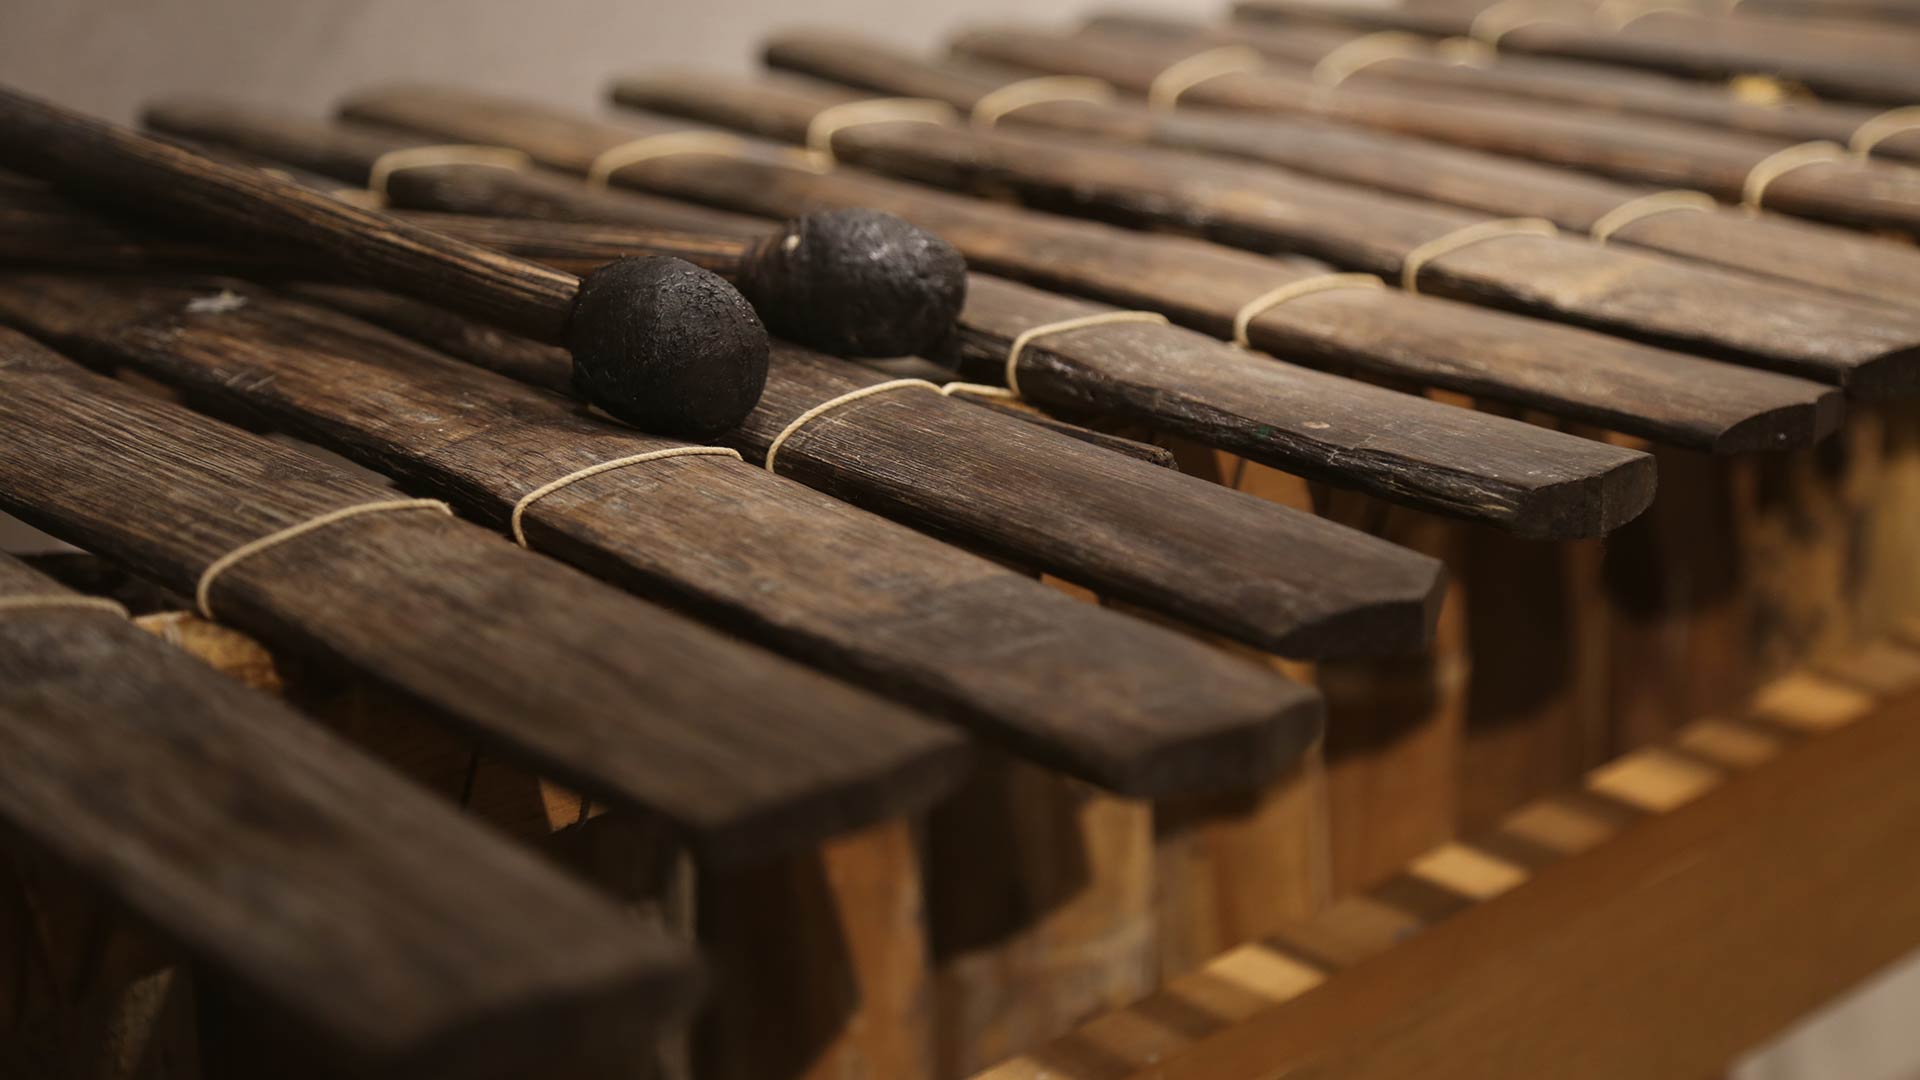 close-up of the marimba keys